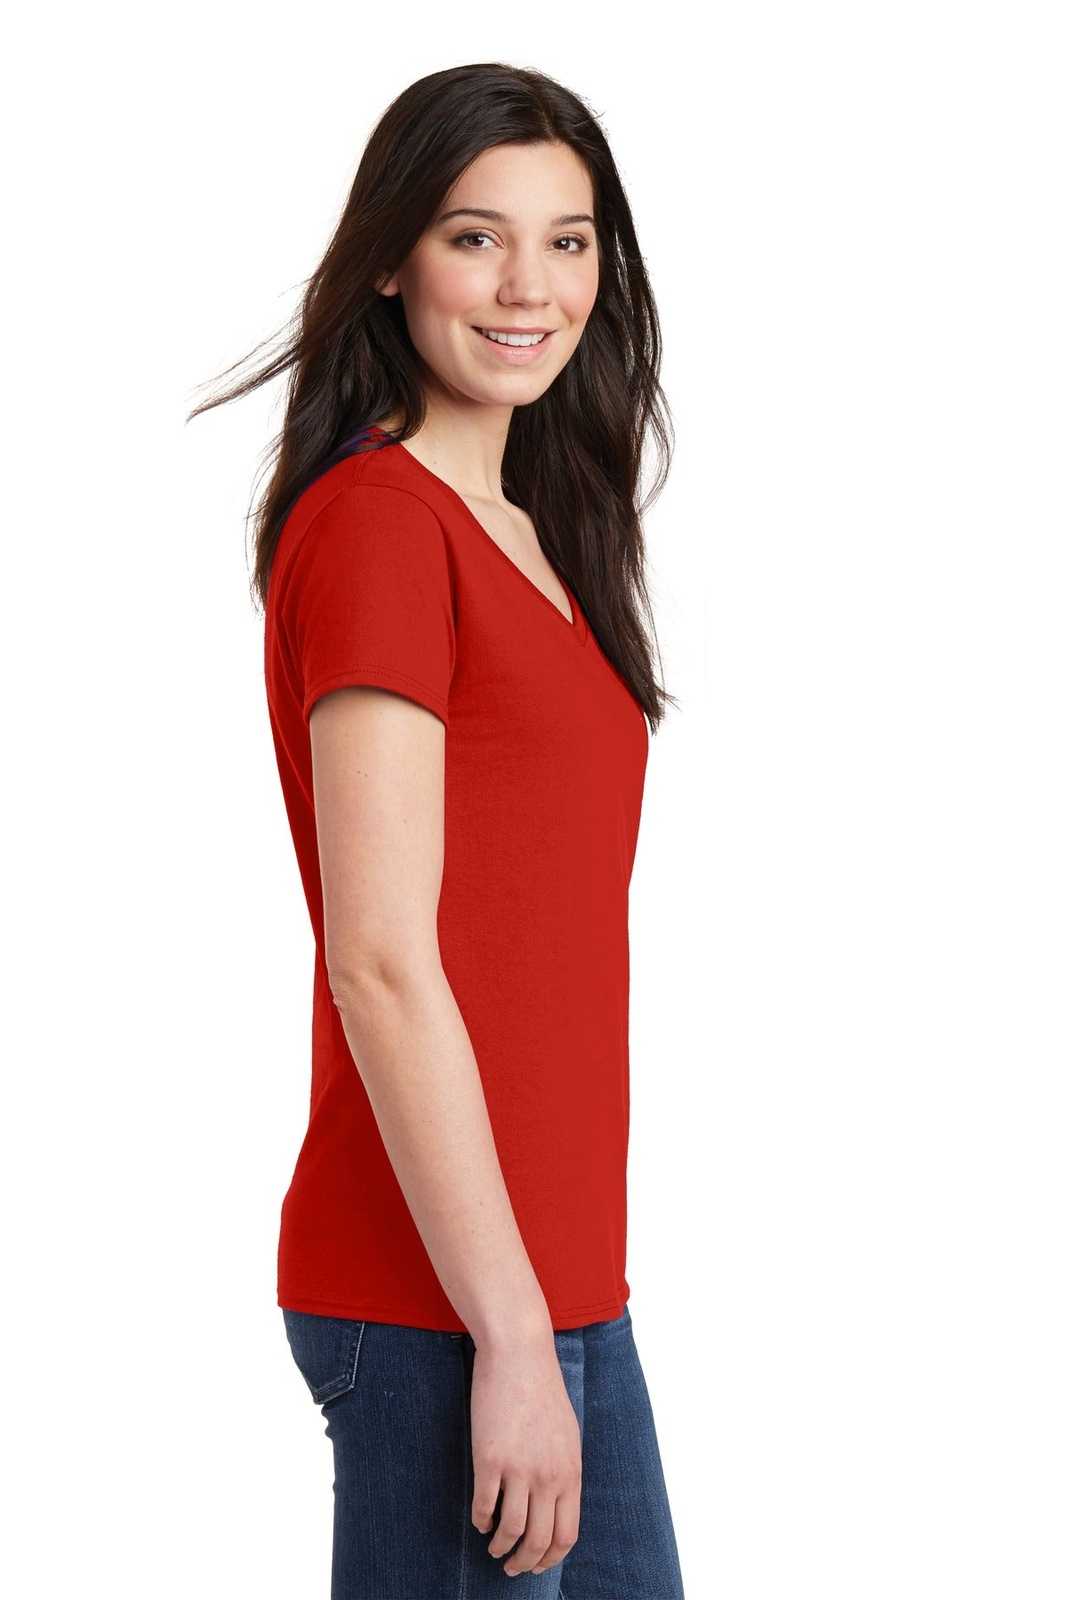 Gildan 5V00L Ladies Heavy Cotton 100% Cotton V-Neck T-Shirt - Red - HIT a Double